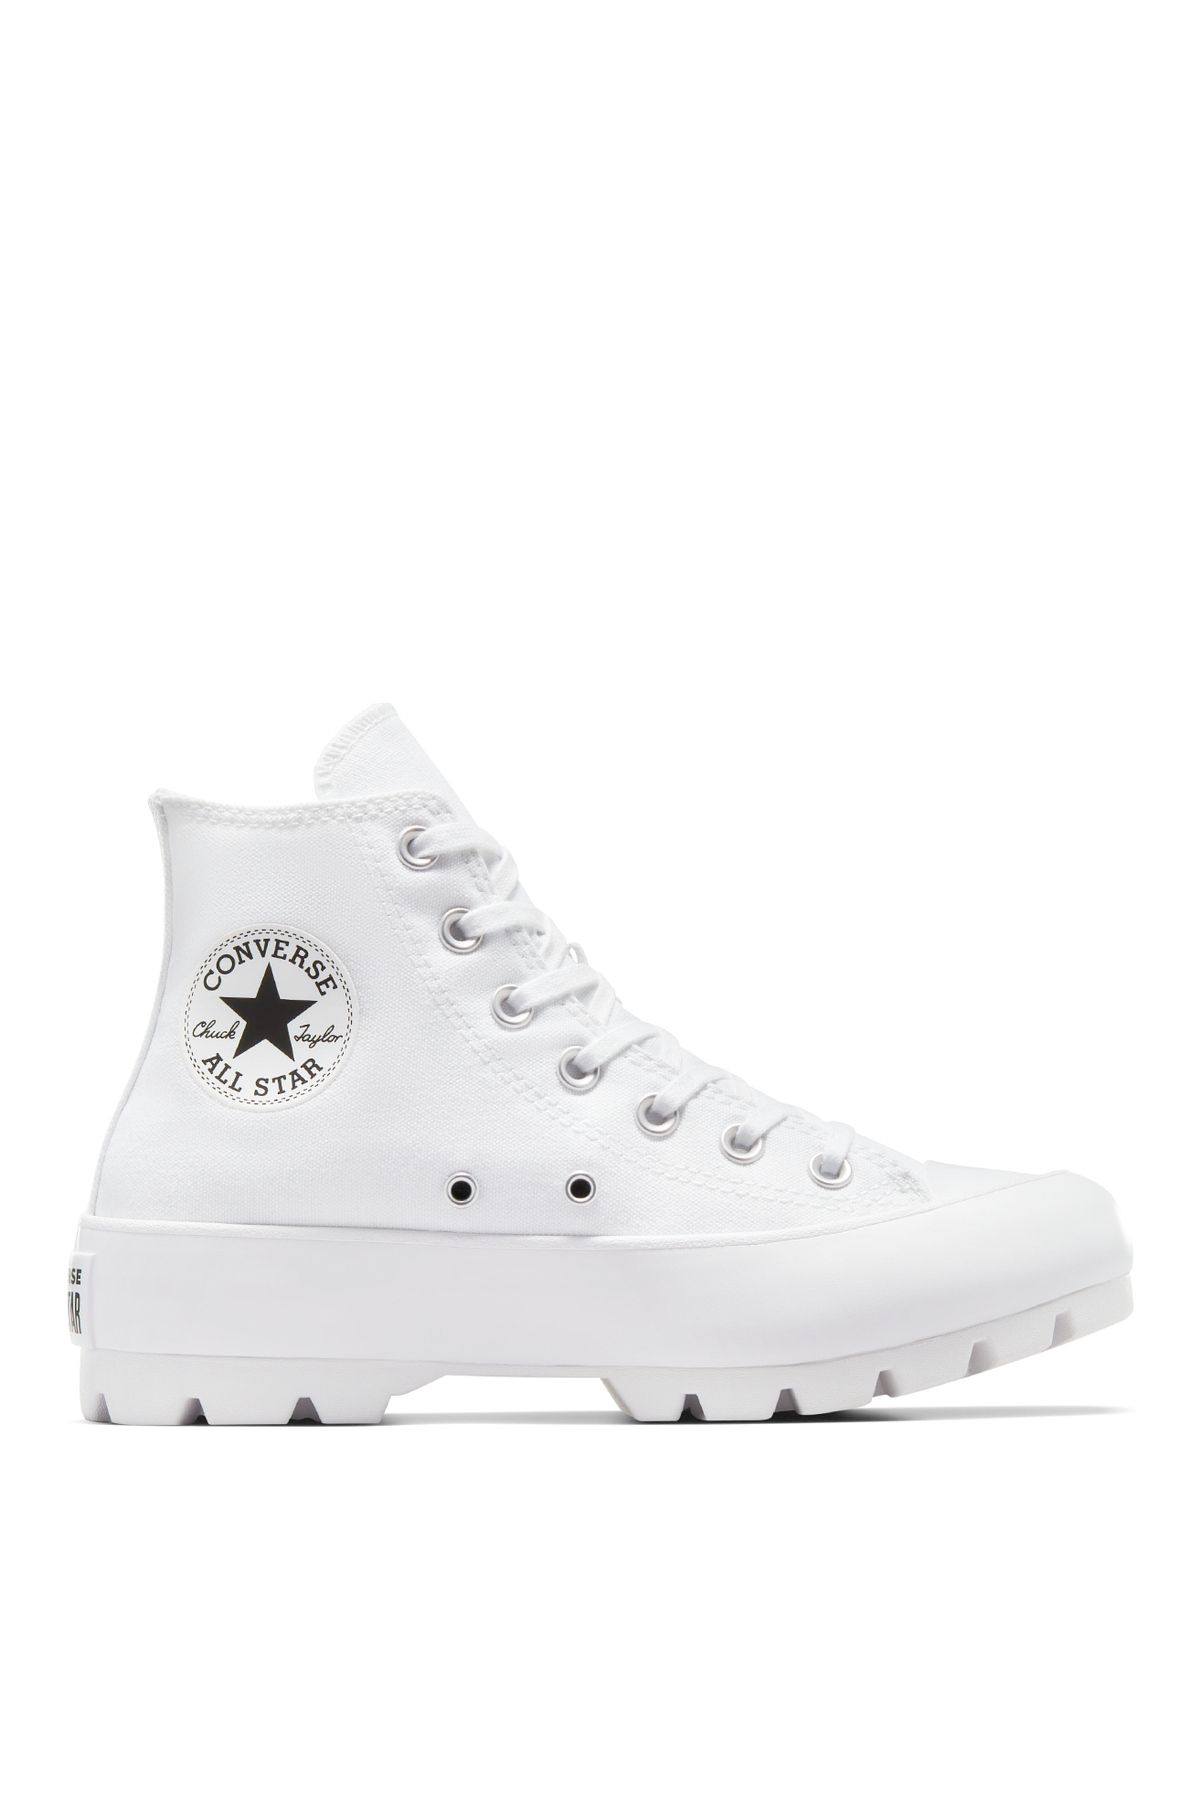 Converse Beyaz Kadın Lifestyle Ayakkabı 565902C CHUCK TAYLOR ALL STAR LU